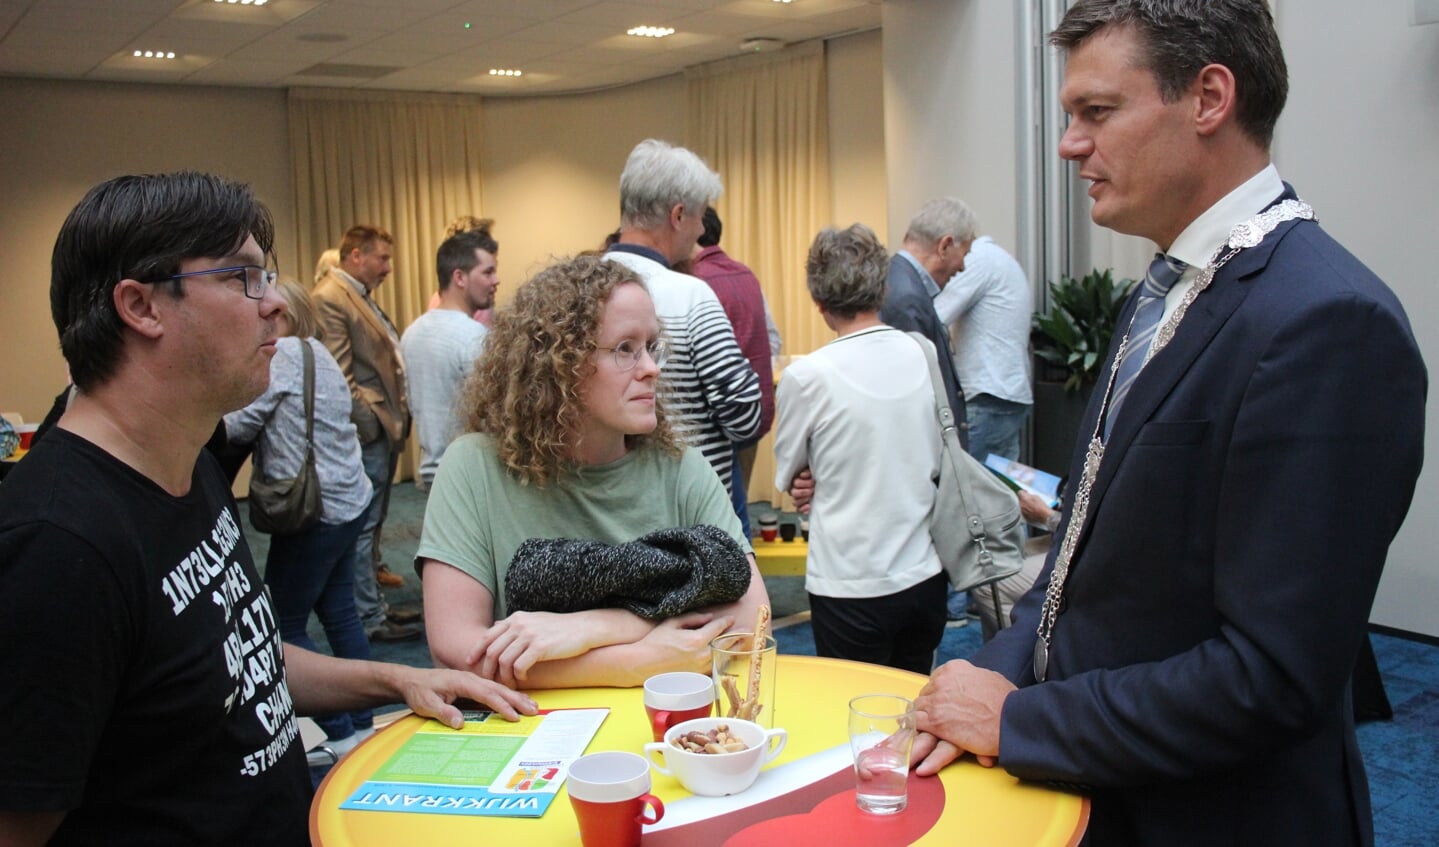 Burgemeester Nieuwenhuis maakte kennis met de nieuwe inwoners van Waddinxveen.